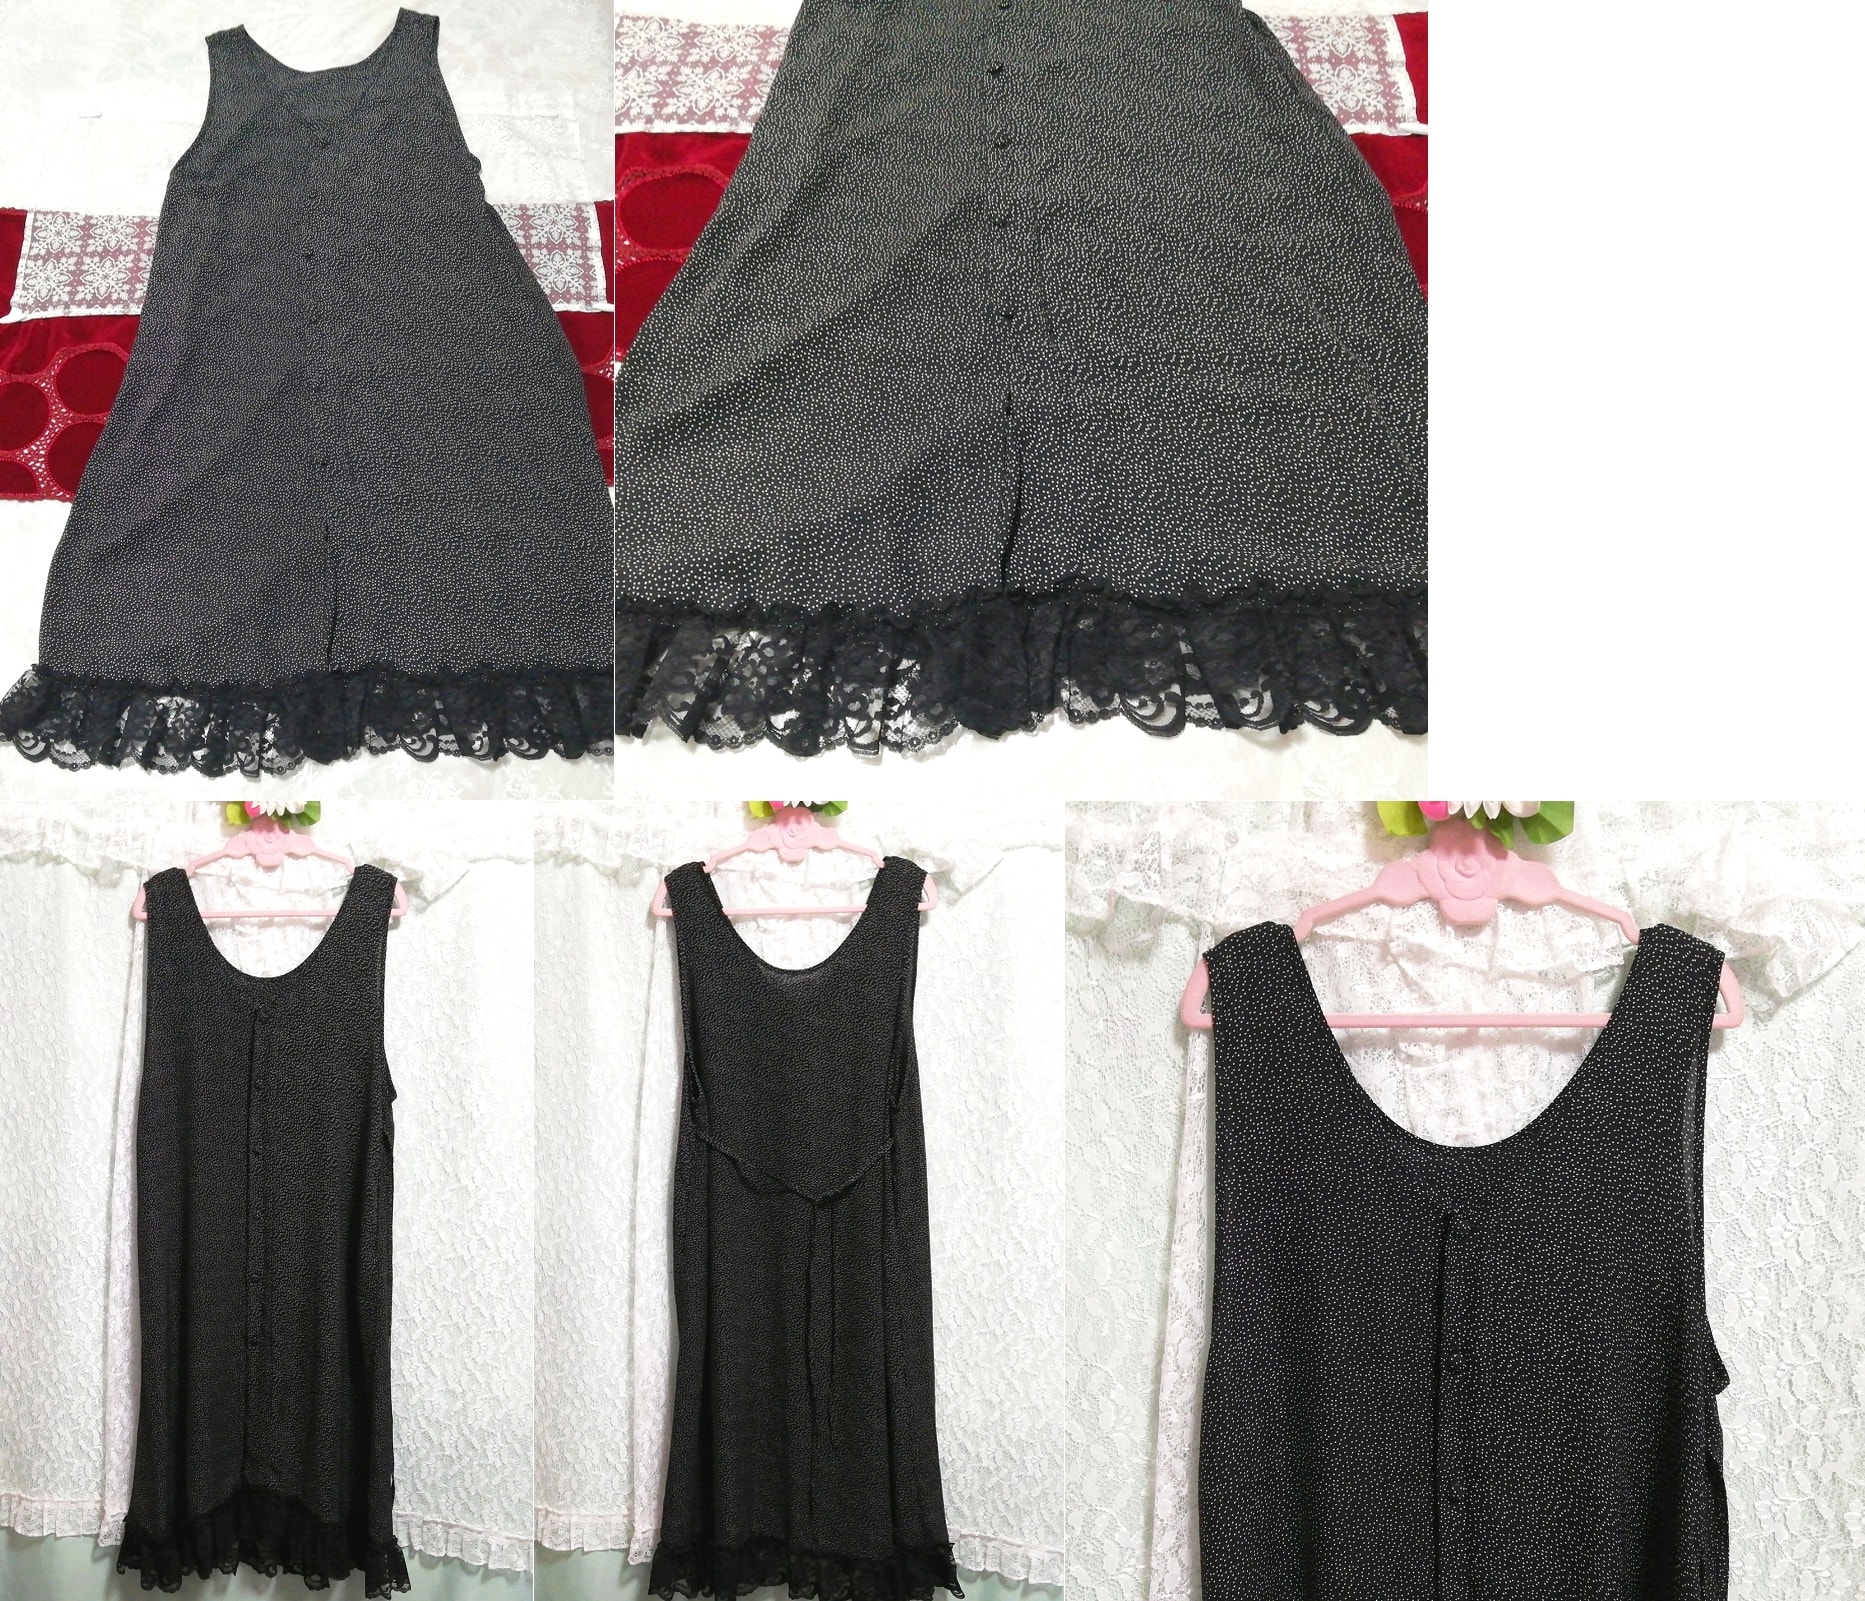 Black and white polka dot chiffon sleeveless negligee nightgown nightwear maxi dress, long skirt, m size